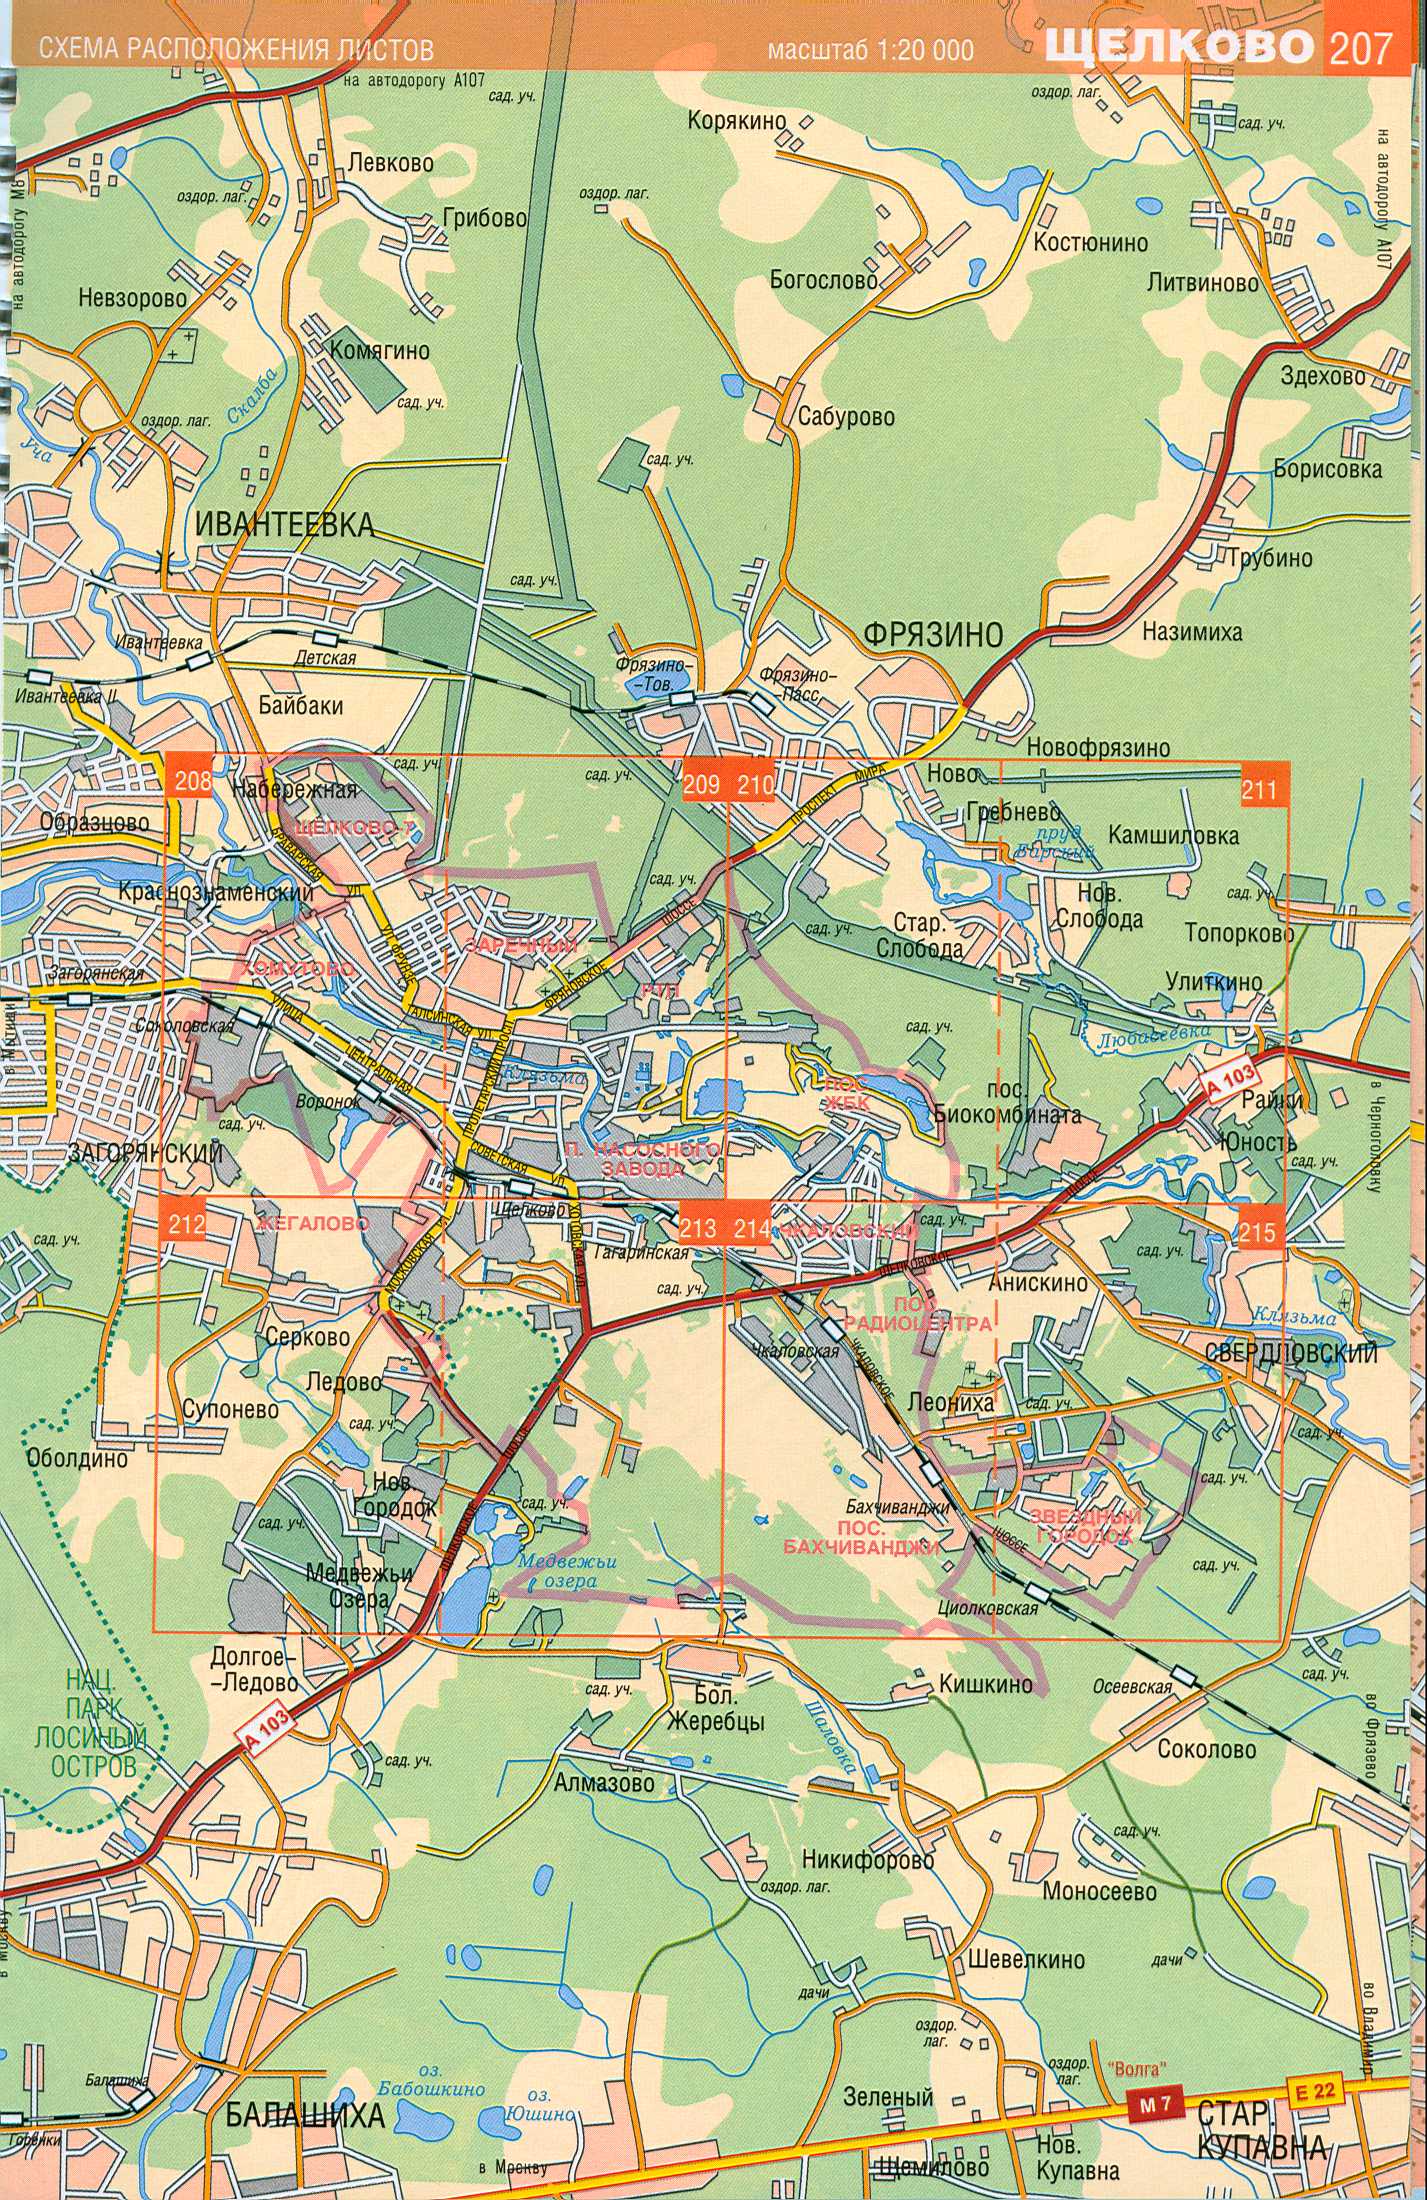 Карта Щелково. Московская область, карта-схема г. Щелково. Скачать бесплатно, A0 - 